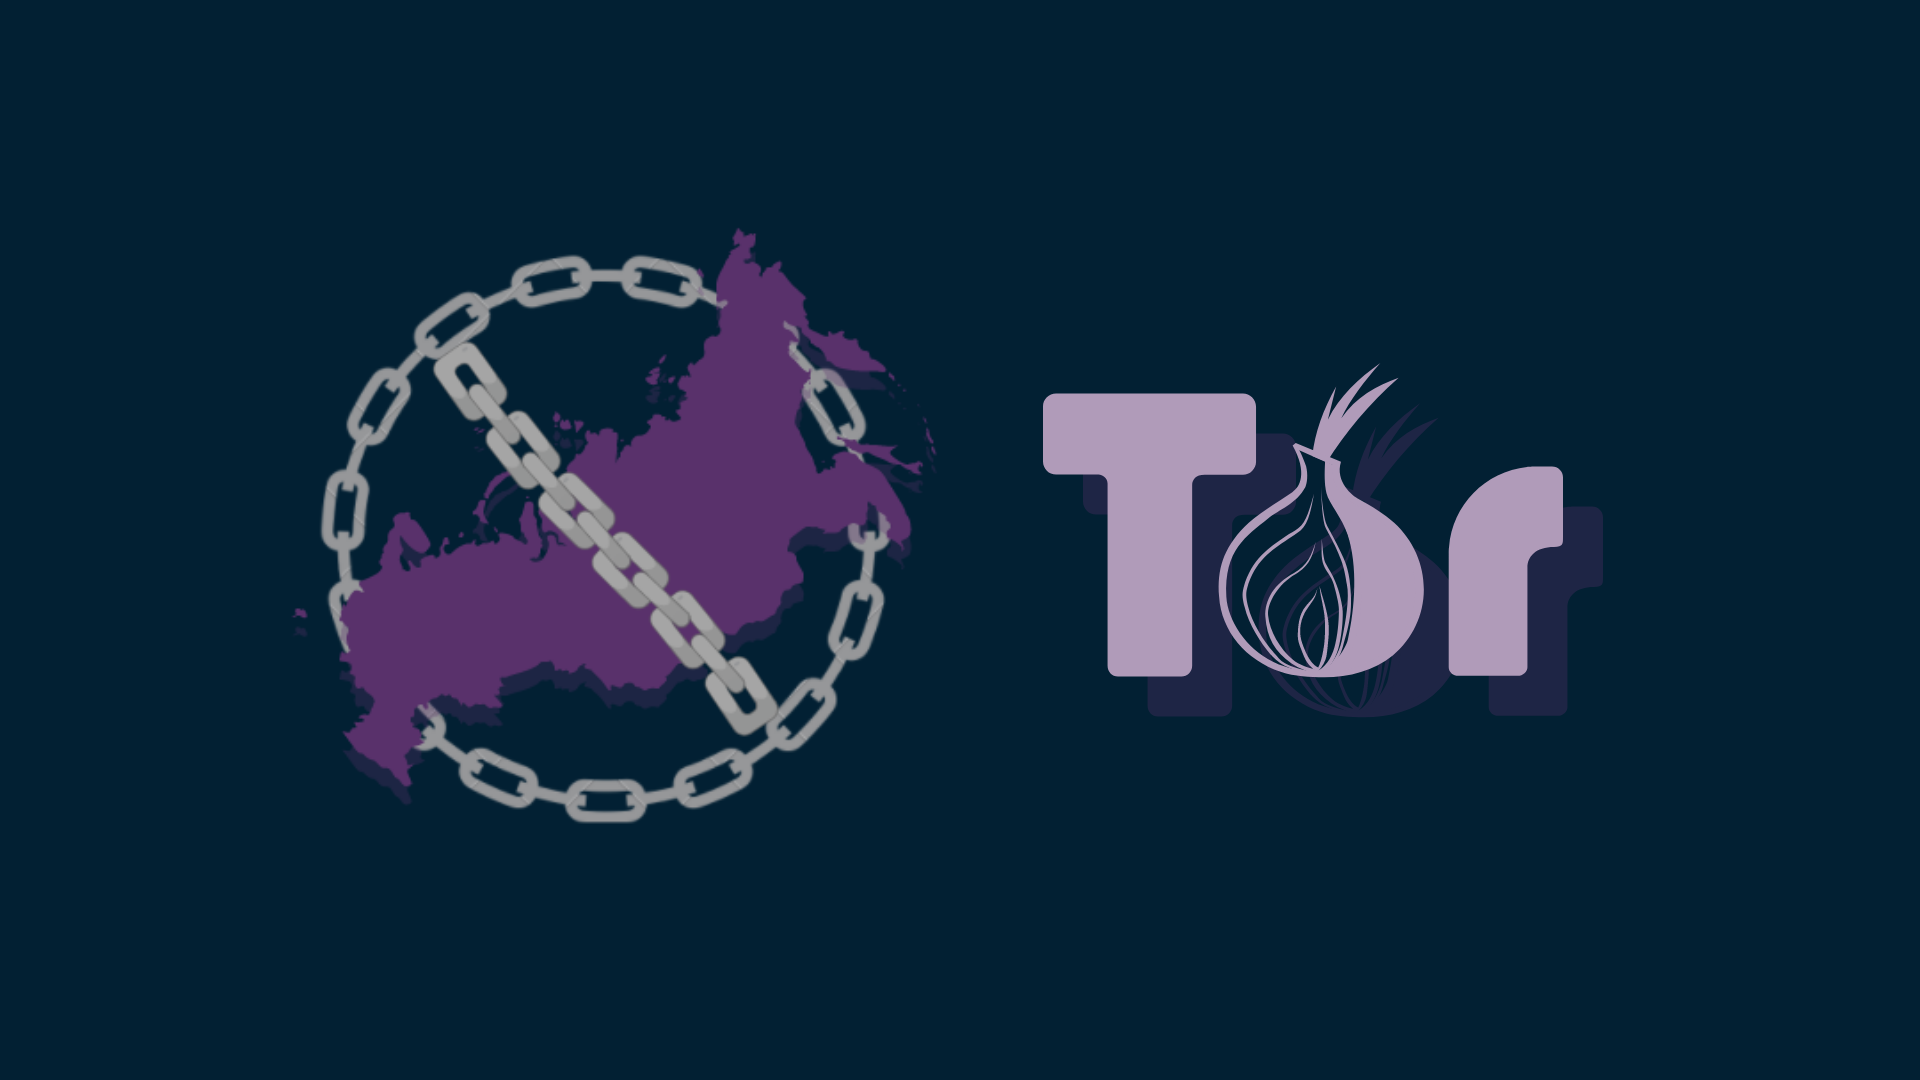 Tor browser rus торрент mega2web tor browser portable скачать бесплатно русская версия торрент мега